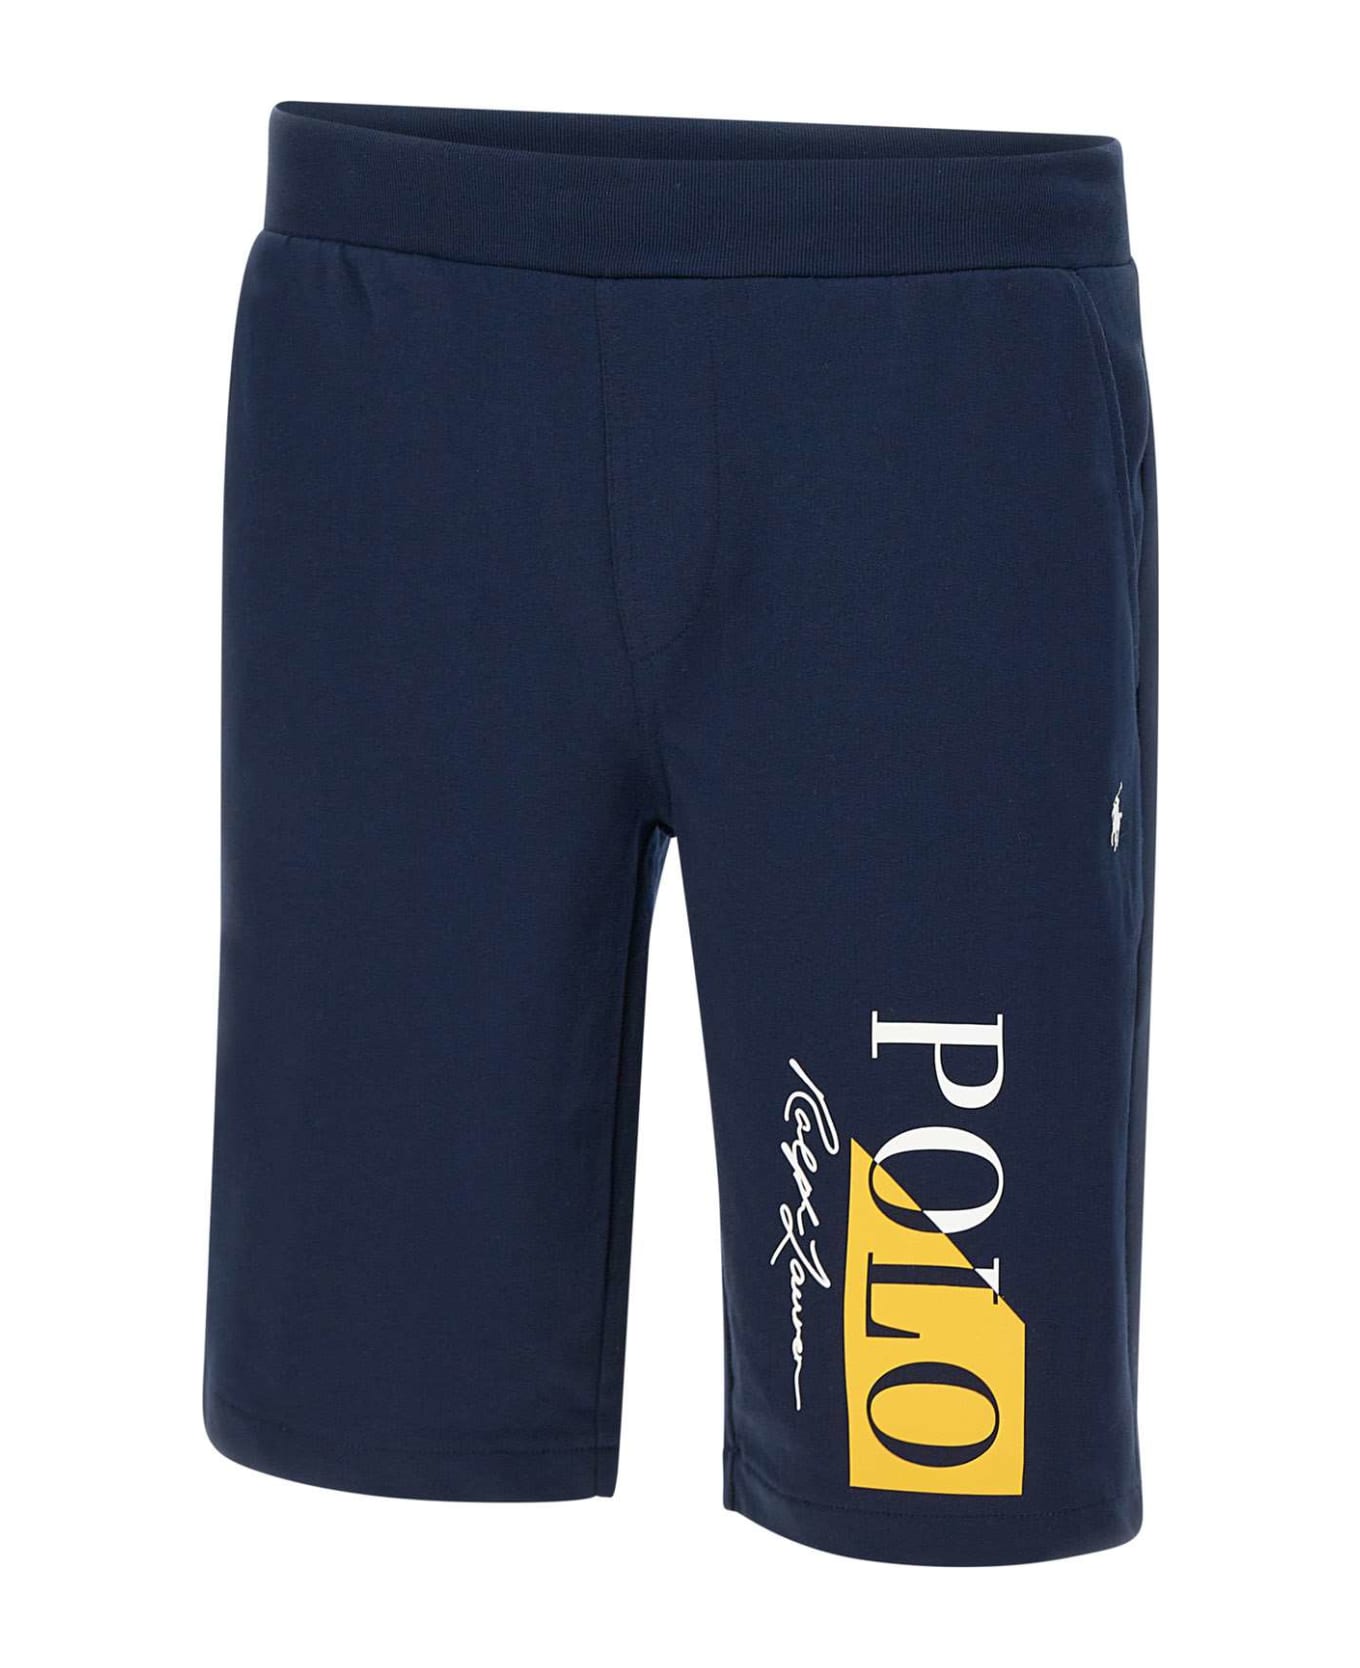 Polo Ralph Lauren Cotton Shorts ショートパンツ